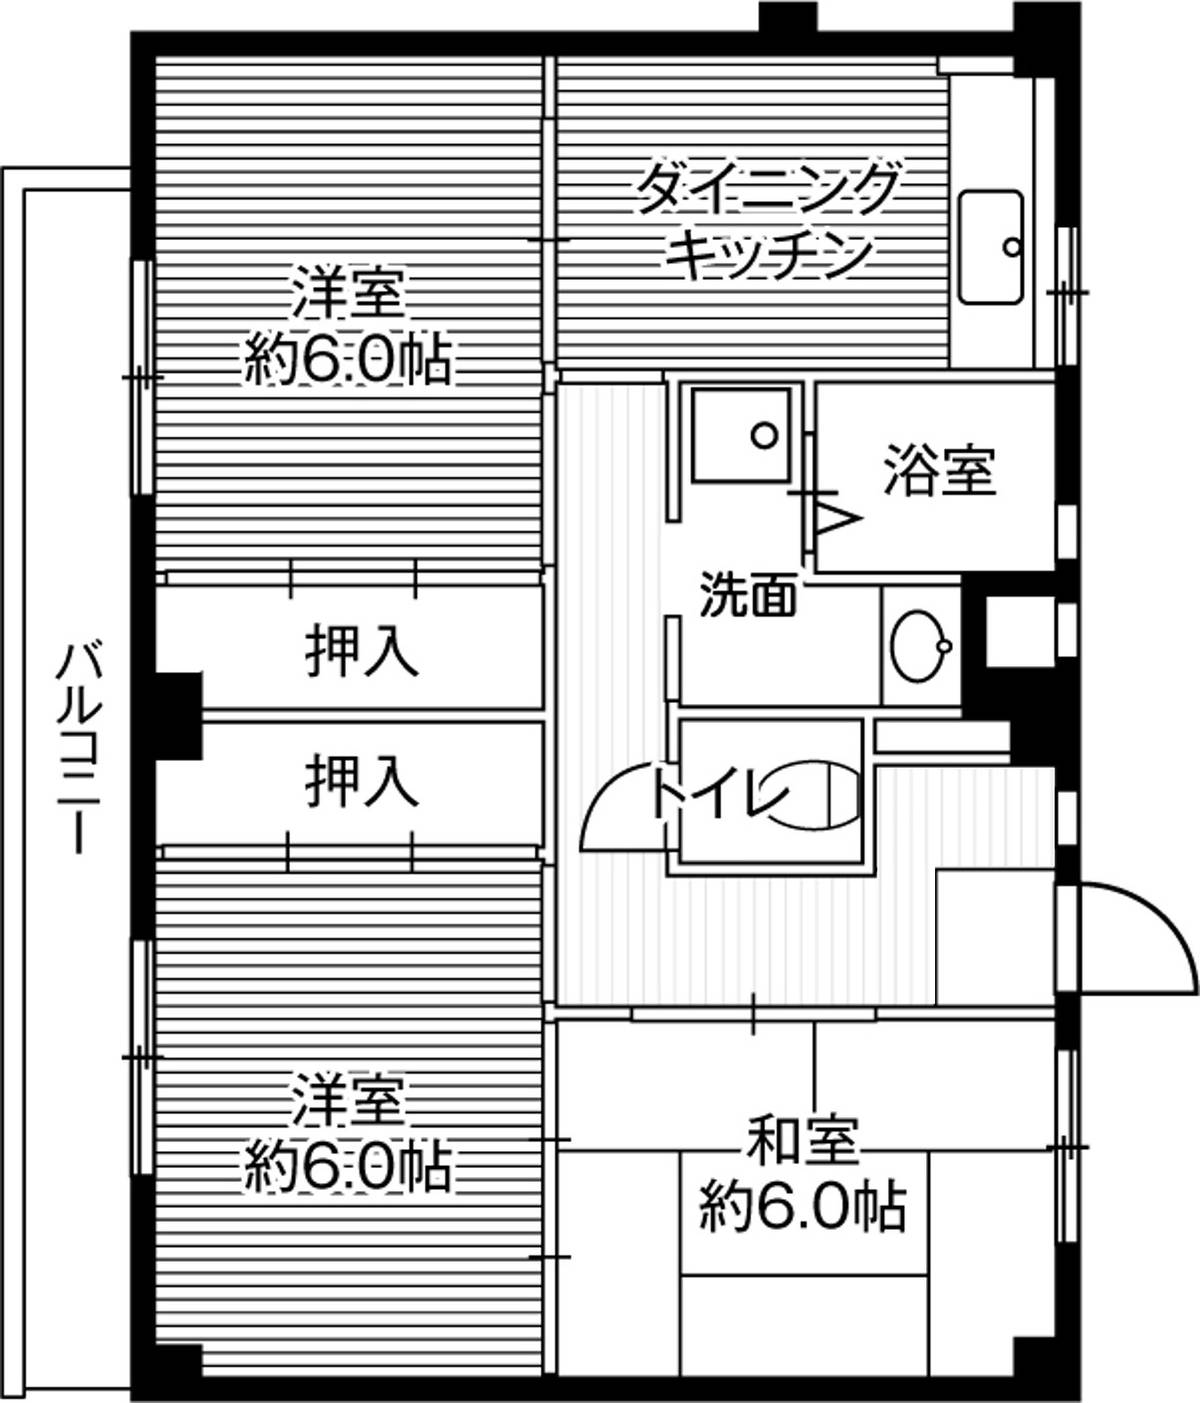 Sơ đồ phòng 3DK của Village House Kushizaki ở Matsudo-shi